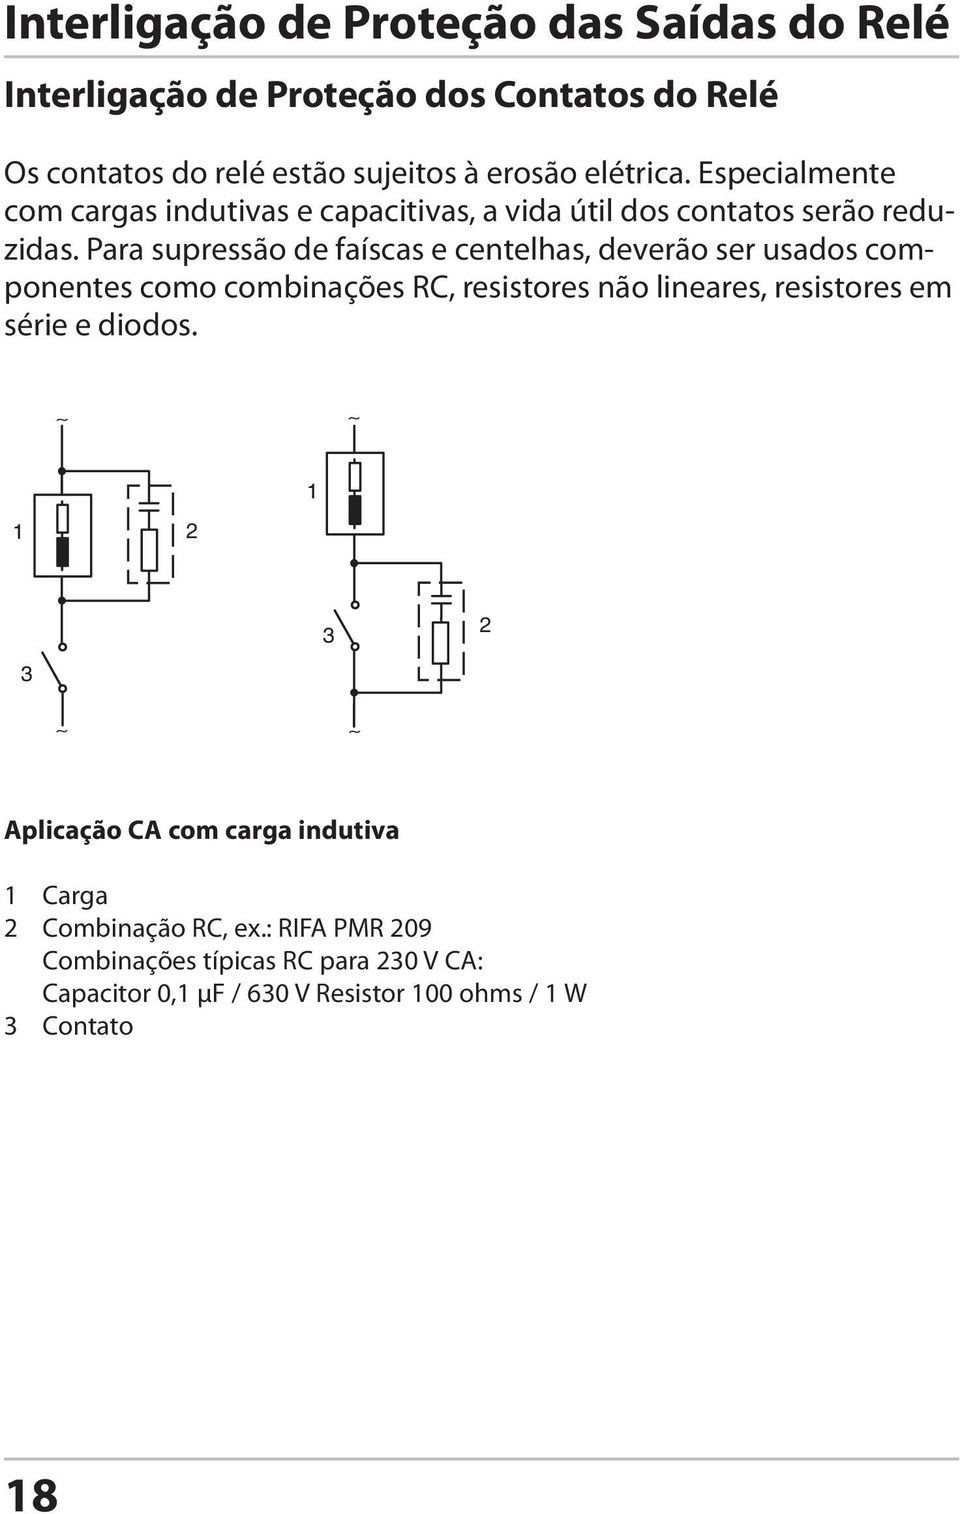 Para supressão de faíscas e centelhas, deverão ser usados componentes como combinações RC, resistores não lineares, resistores em série e